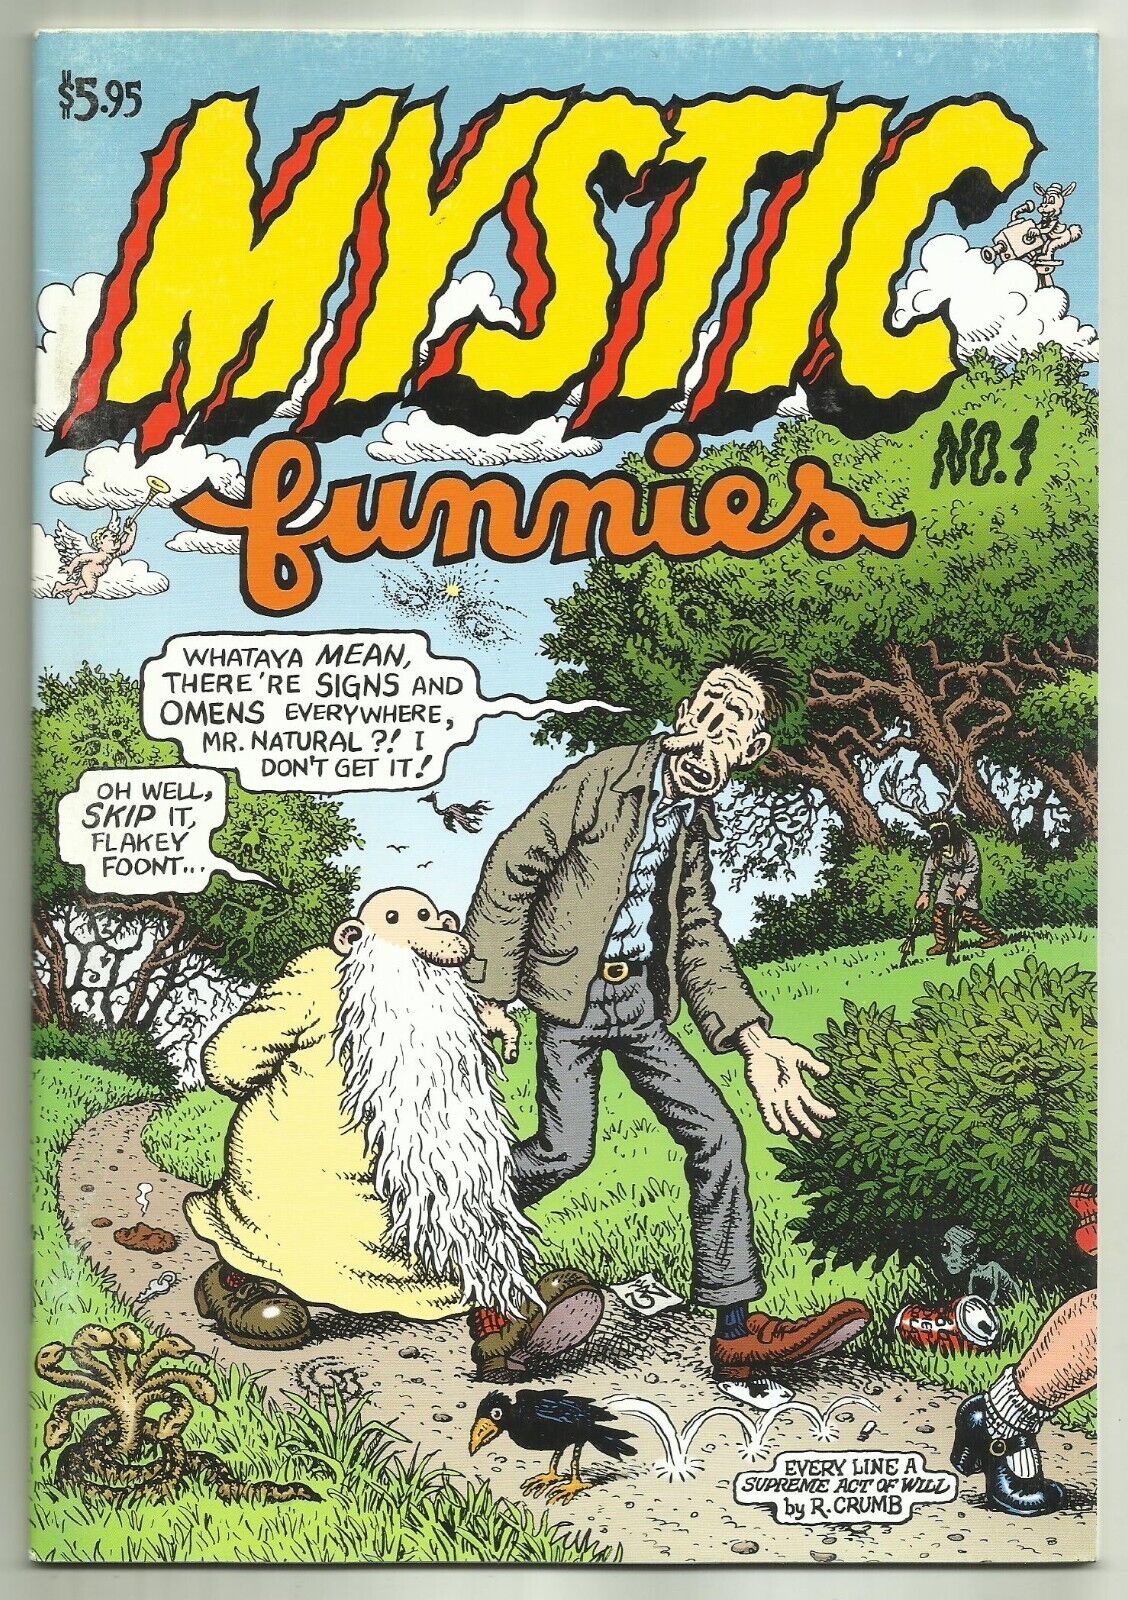 MYSTIC FUNNIES #1 (Robert Crumb, Mr. Natural, Flakey Foont, In Color)  1997